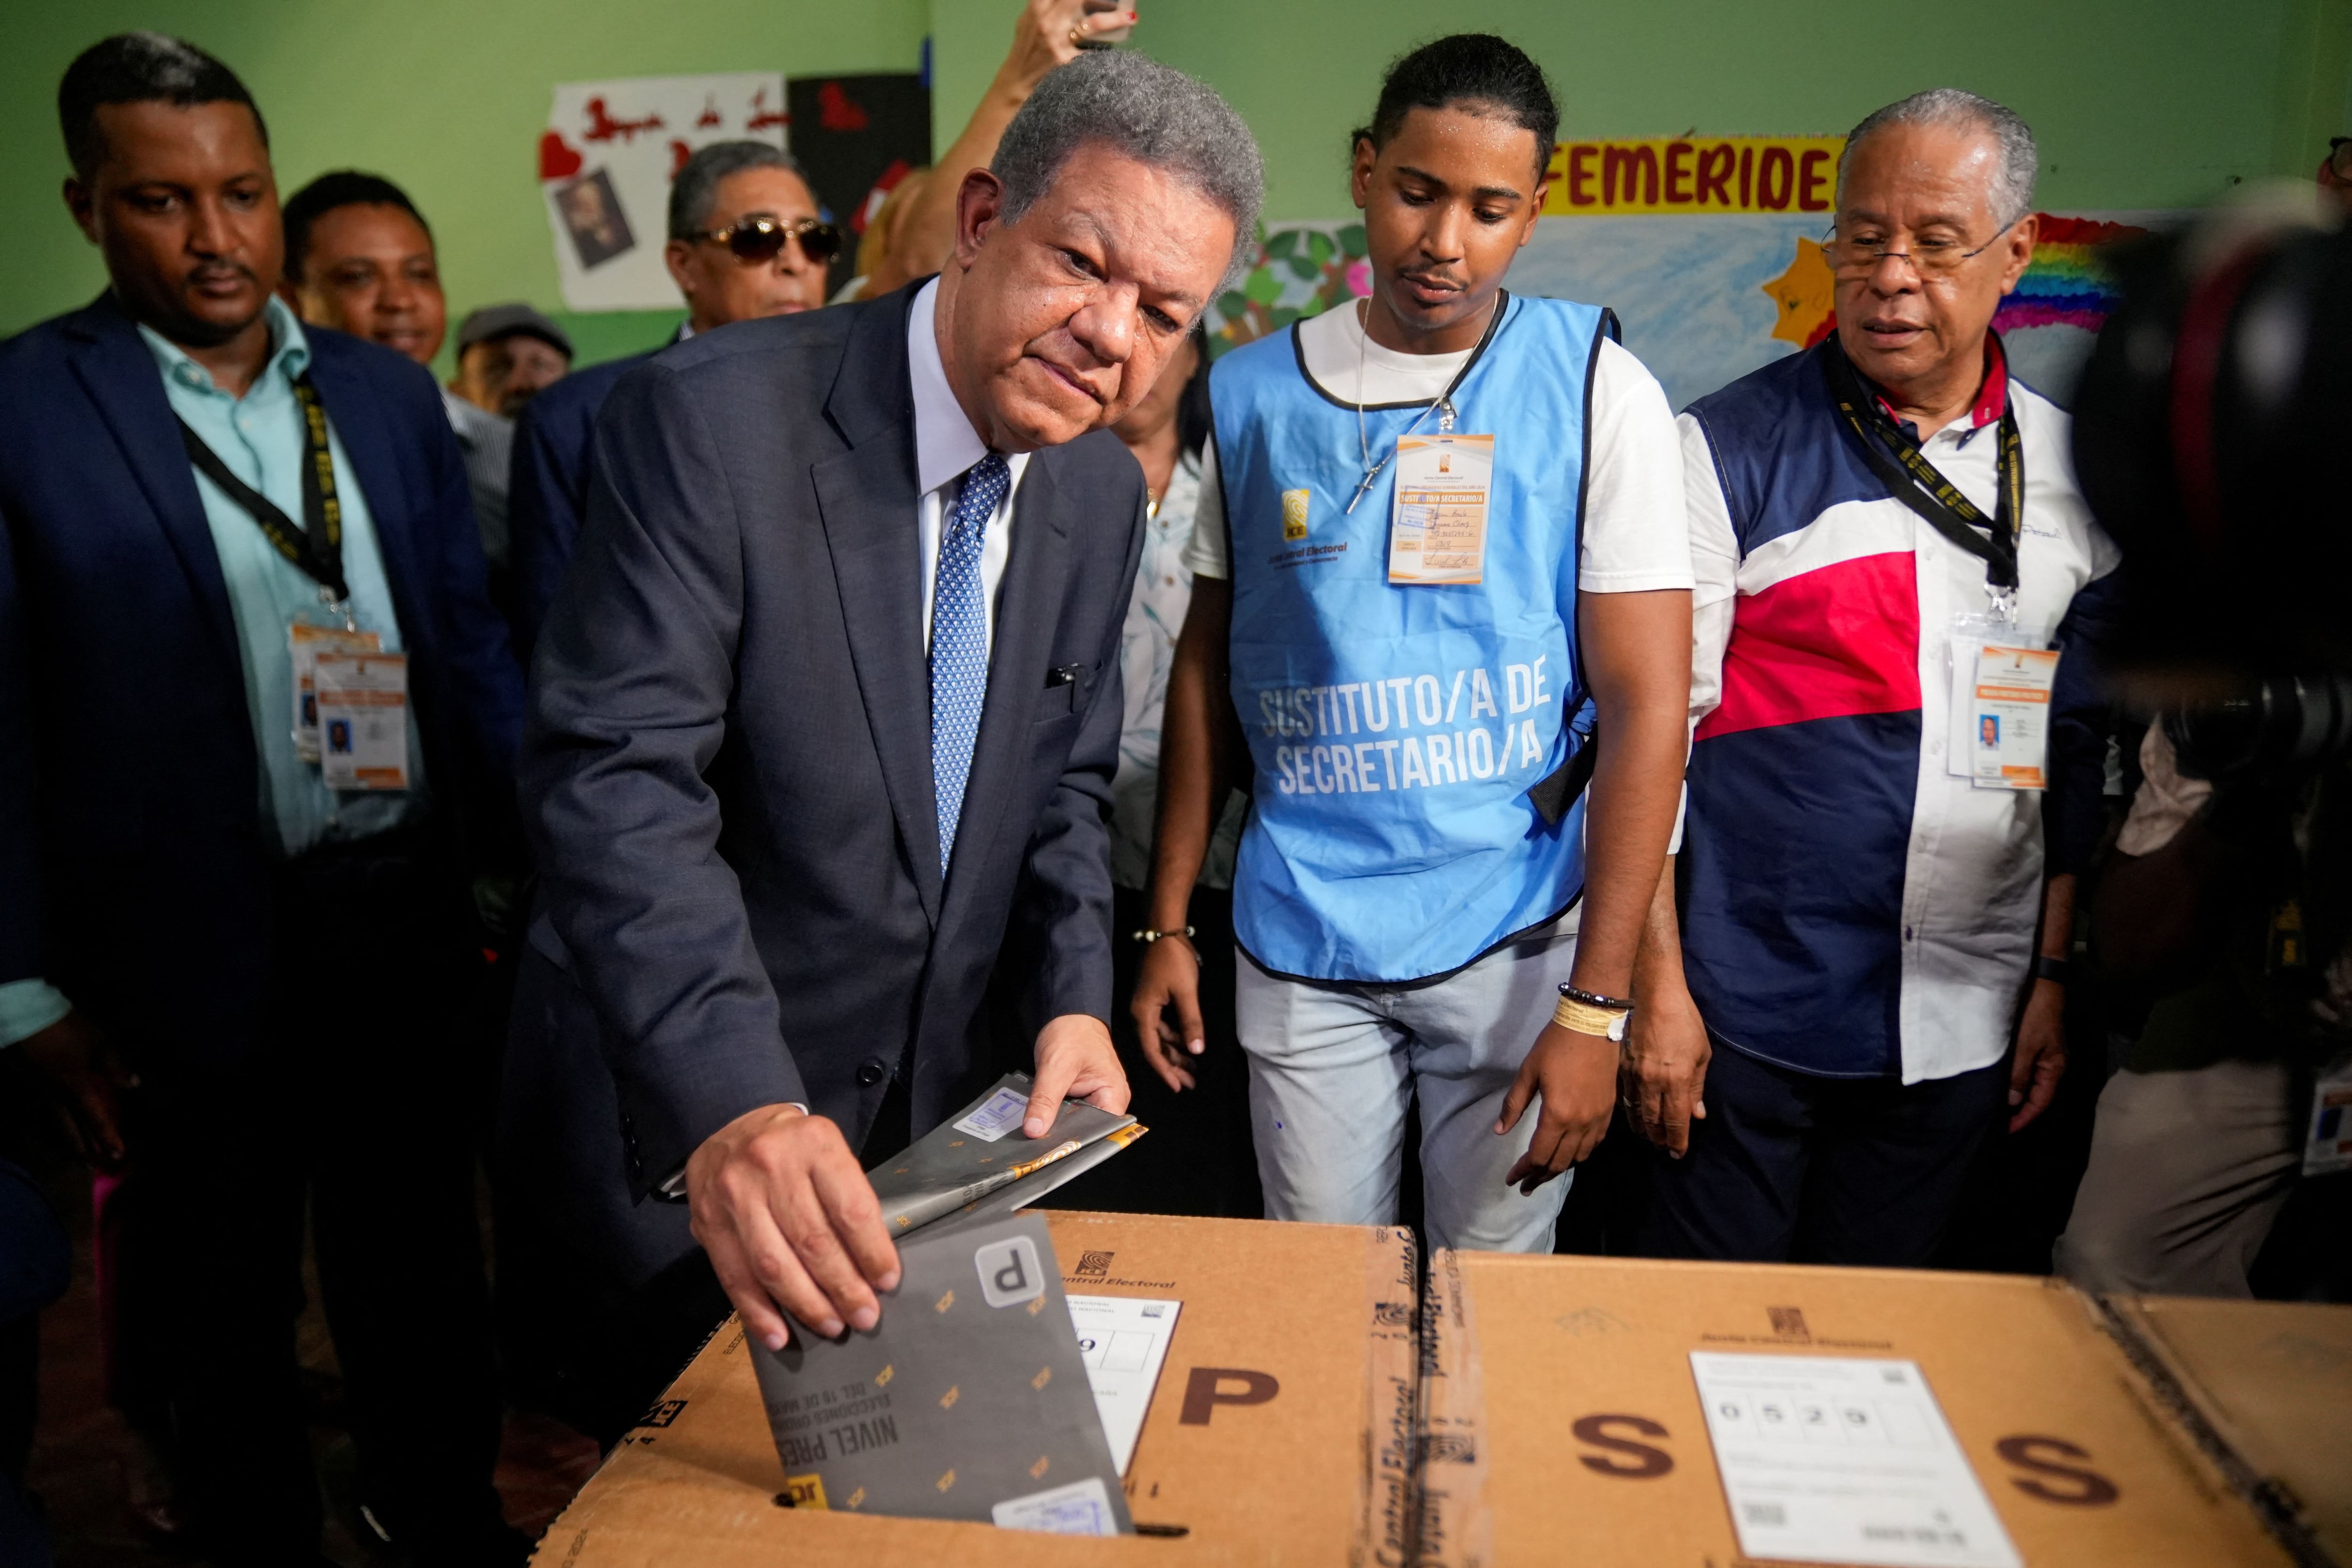 El candidato presidencial del partido Fuerza Popular Leonel Fernández vota el día de las elecciones presidenciales en Santo Domingo, República Dominicana, ο 19 de mayo de 2024. REUTERS/Fran Afonso